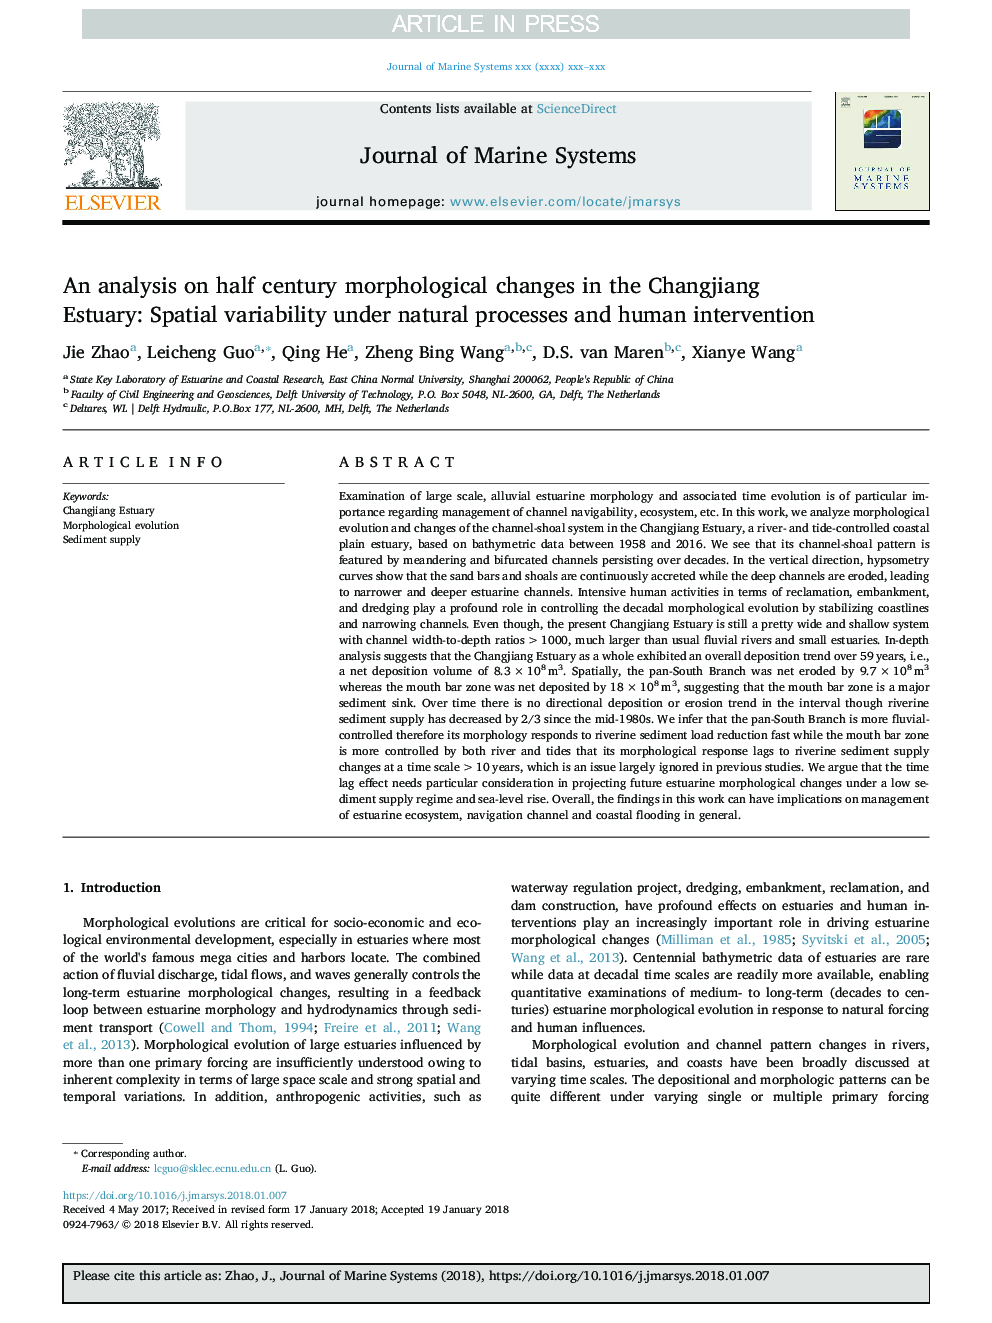 تجزیه و تحلیل تغییرات مورفولوژیکی نیم قرن در رودخانه چانگ لیانگ: تنوع فضایی در فرایندهای طبیعی و دخالت 